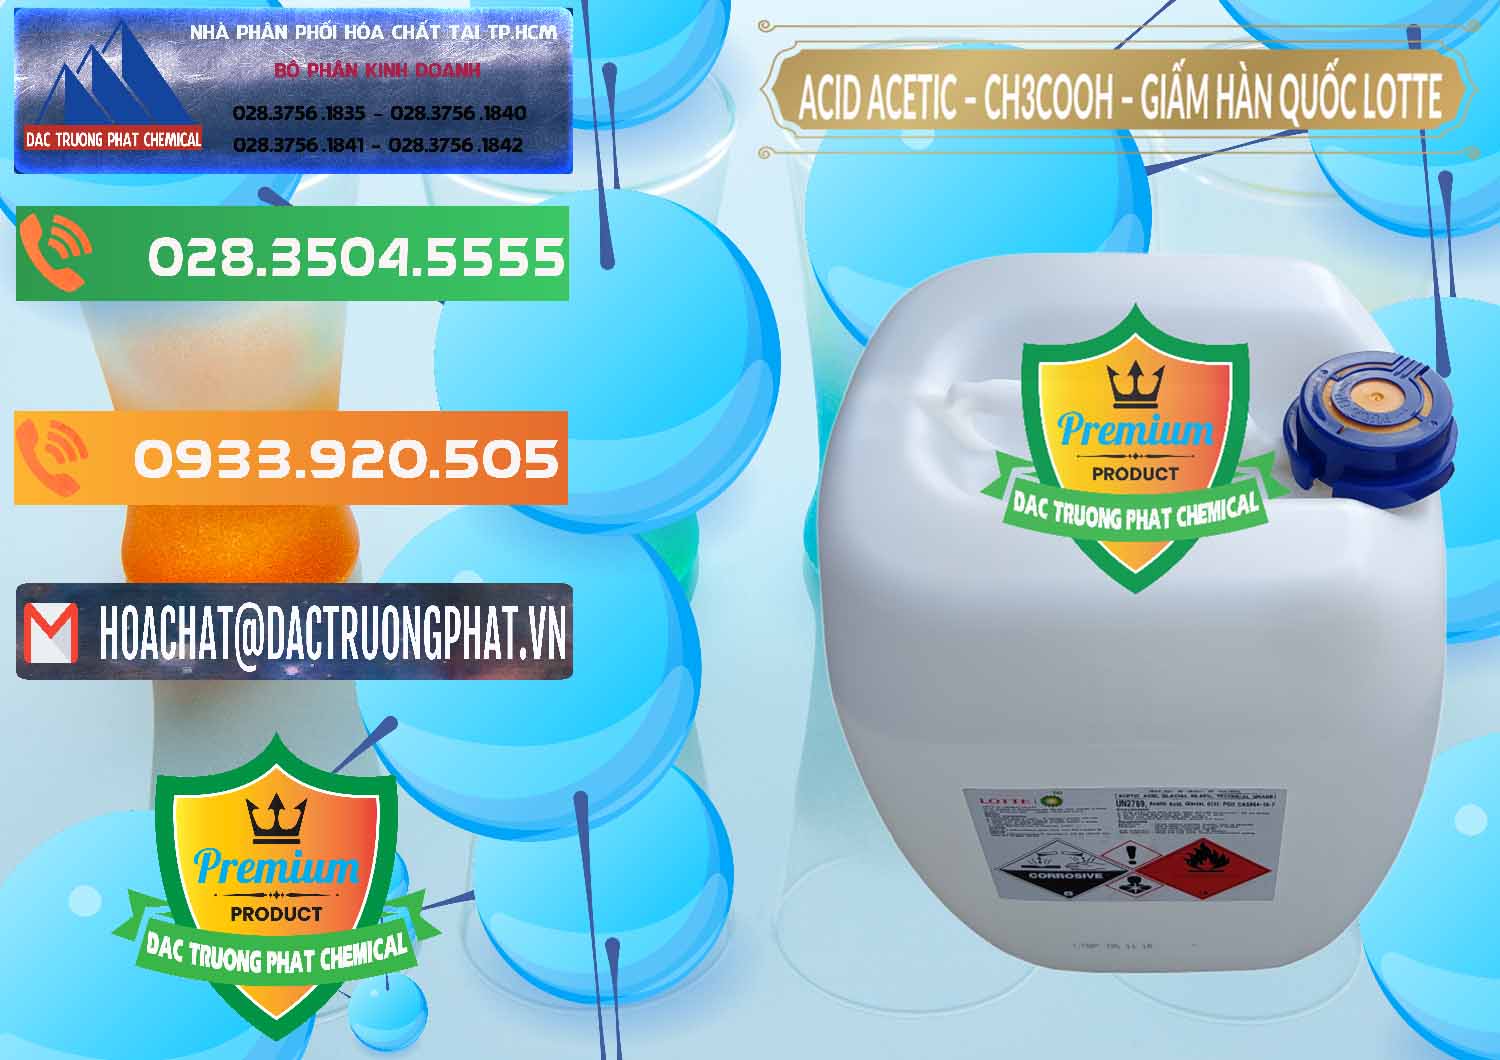 Đơn vị chuyên nhập khẩu ( bán ) Acetic Acid – Axit Acetic Hàn Quốc Lotte Korea - 0002 - Chuyên bán & phân phối hóa chất tại TP.HCM - hoachatxulynuoc.com.vn